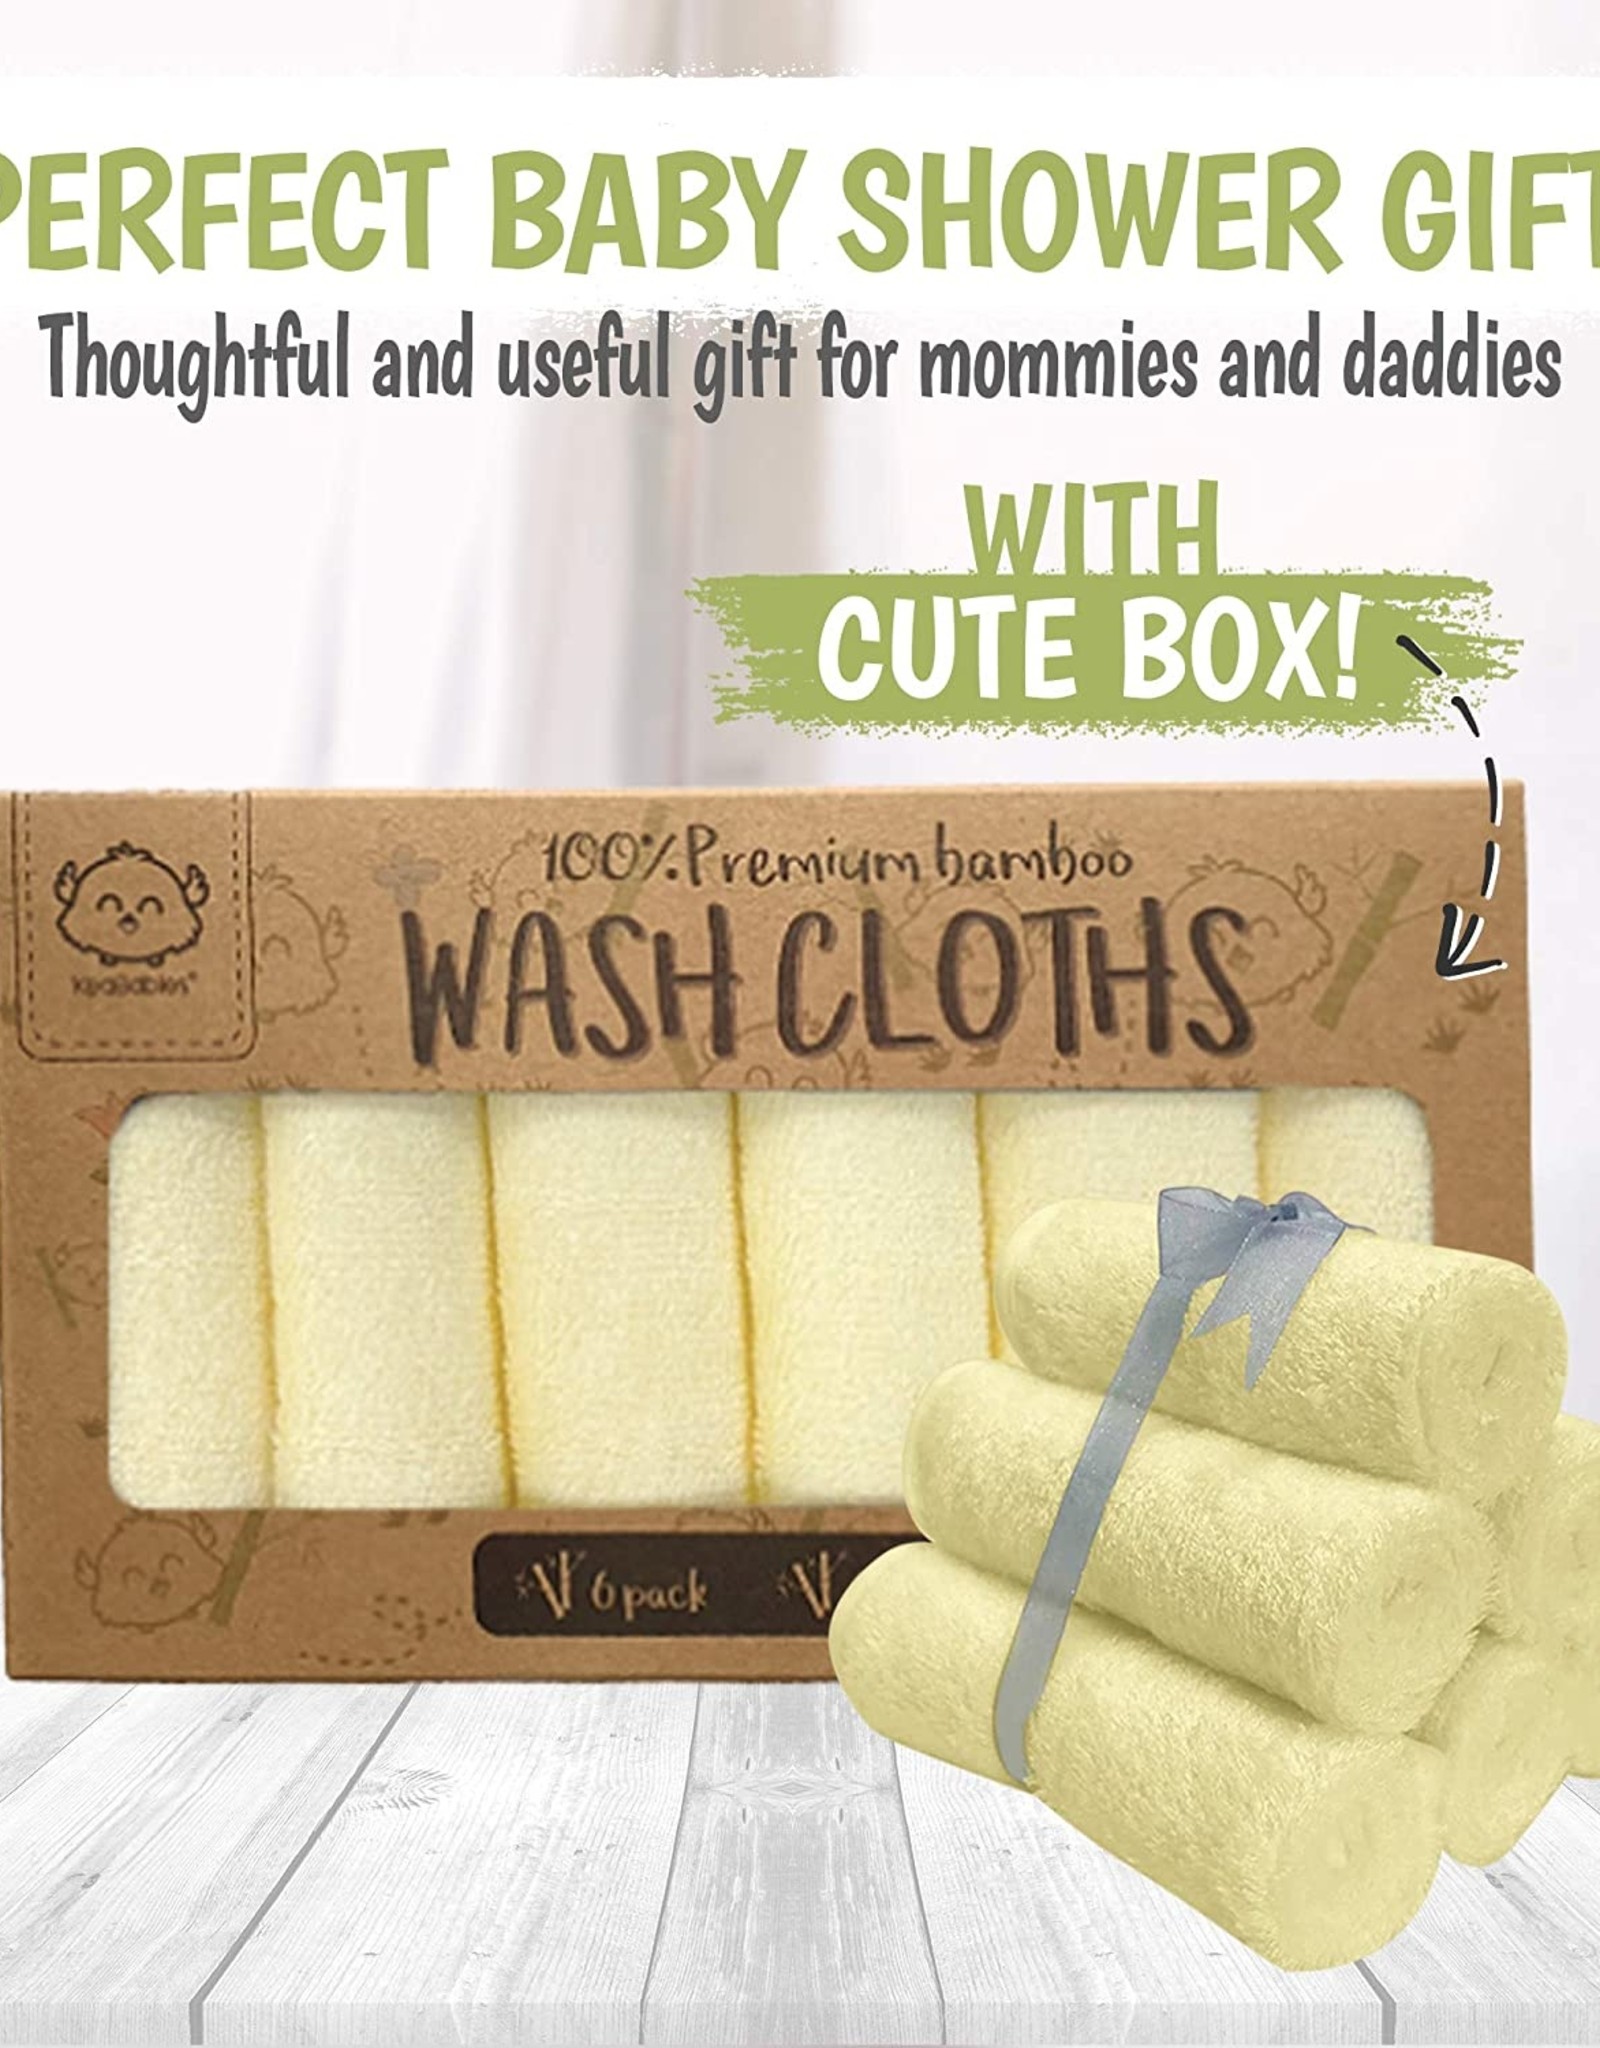 Deluxe Baby Washcloths